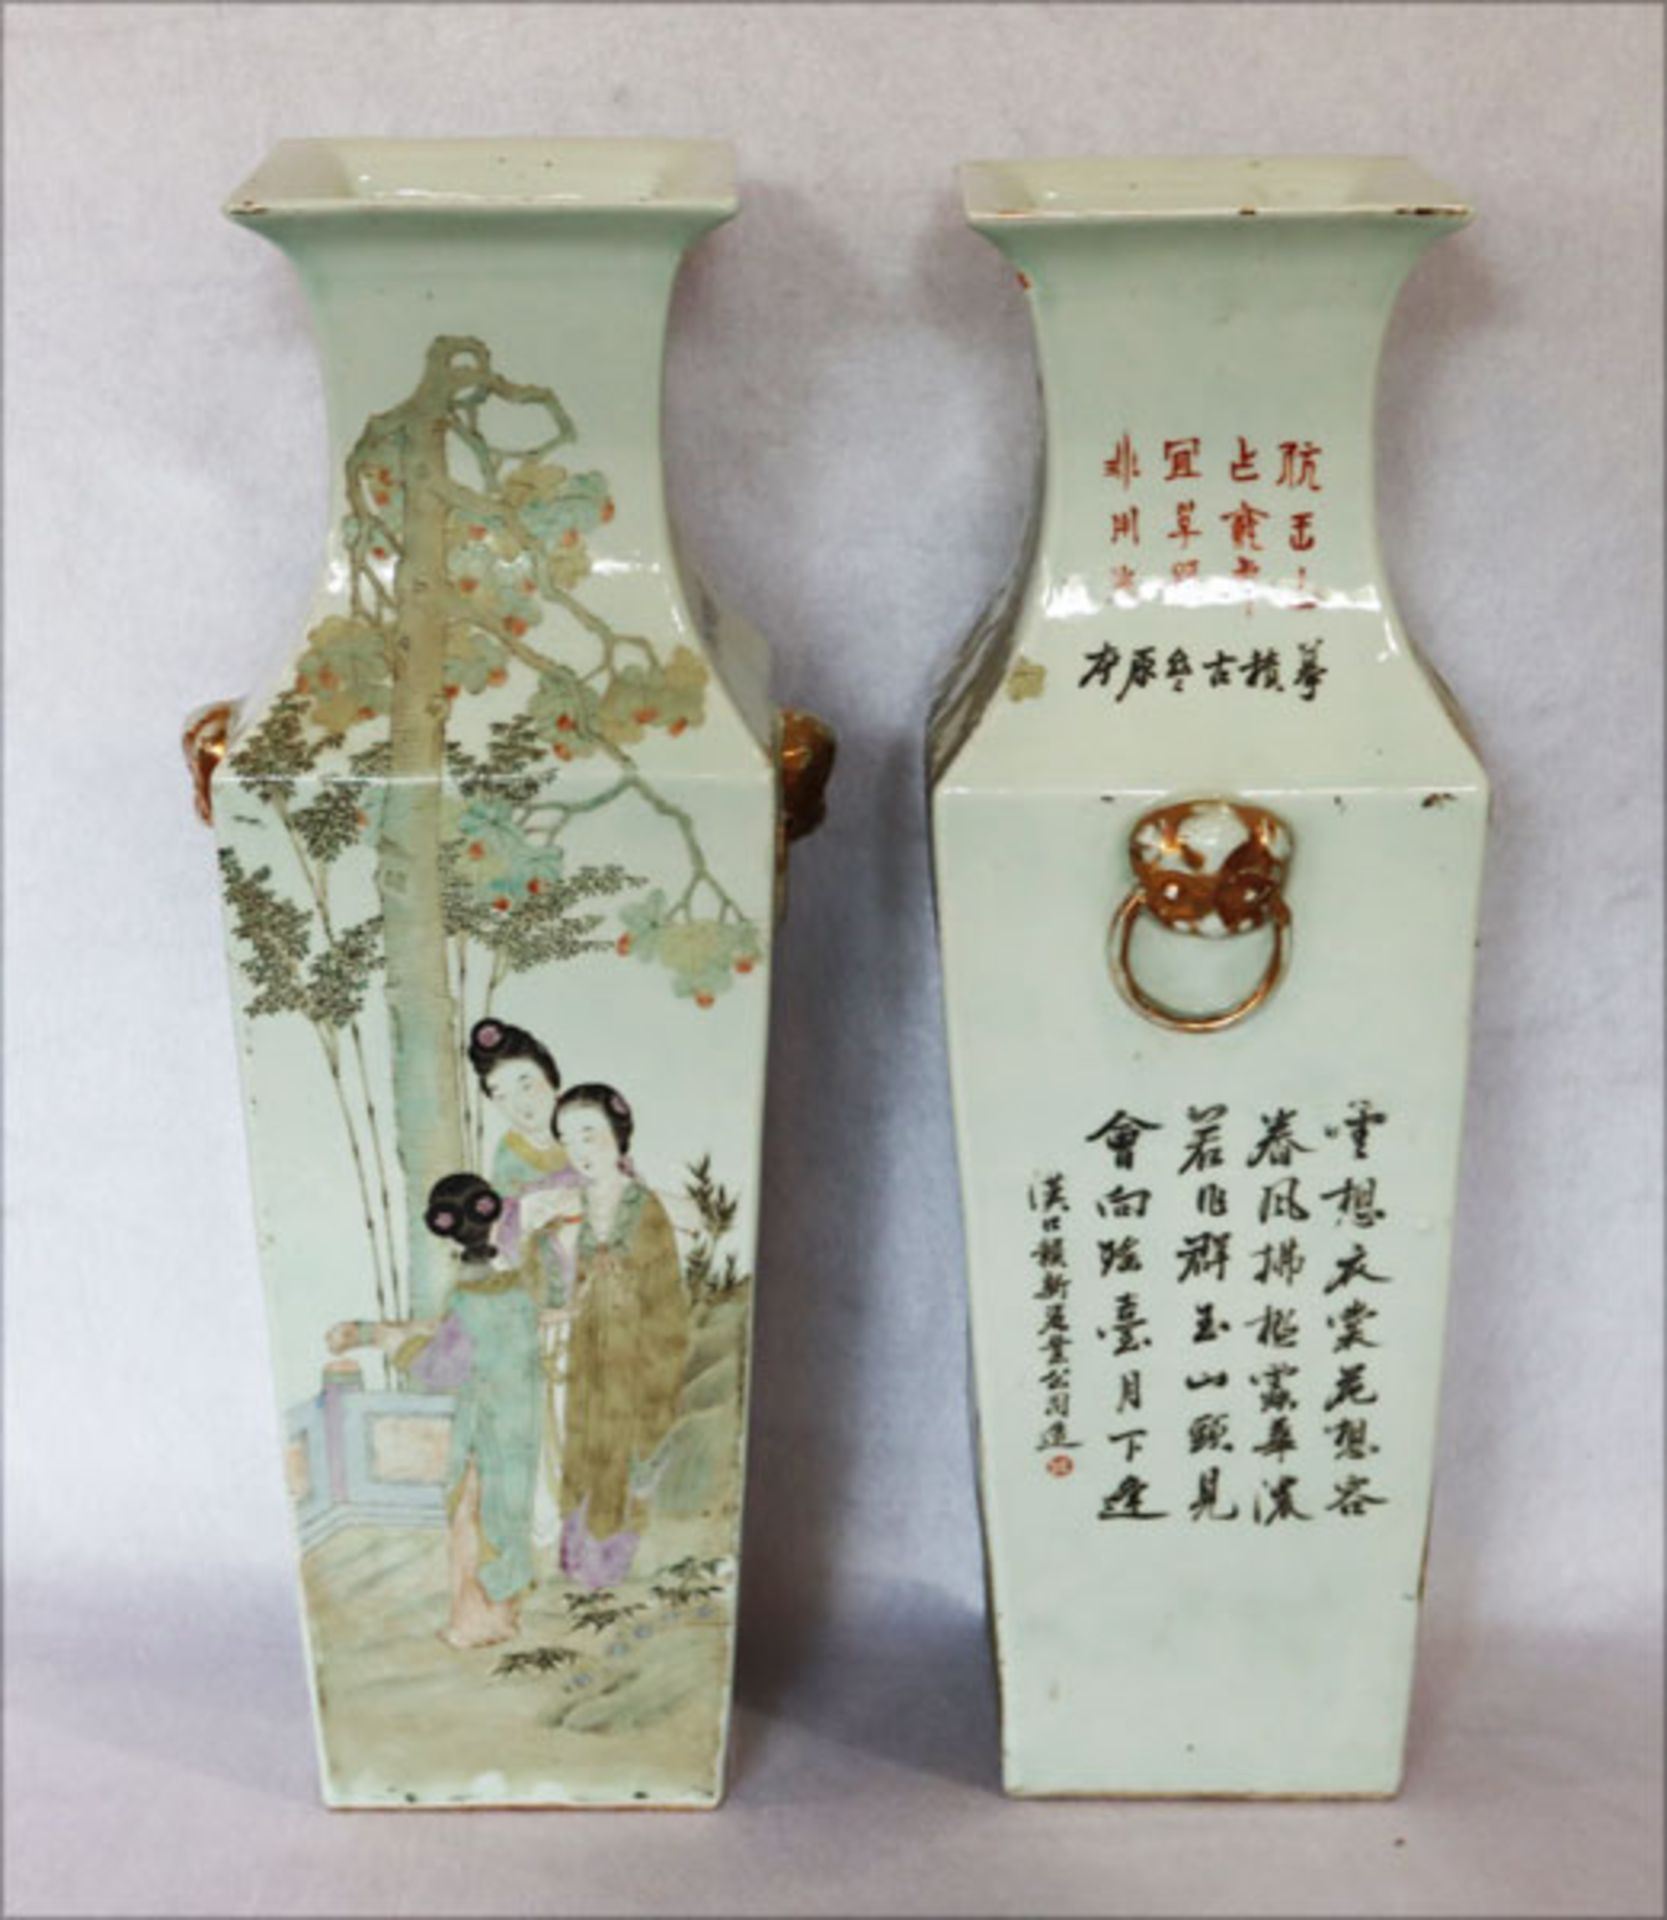 Paar japanische Bodenvasen mit figürlichem und floralem Dekor, sowie Schriftzeichen, seitliche